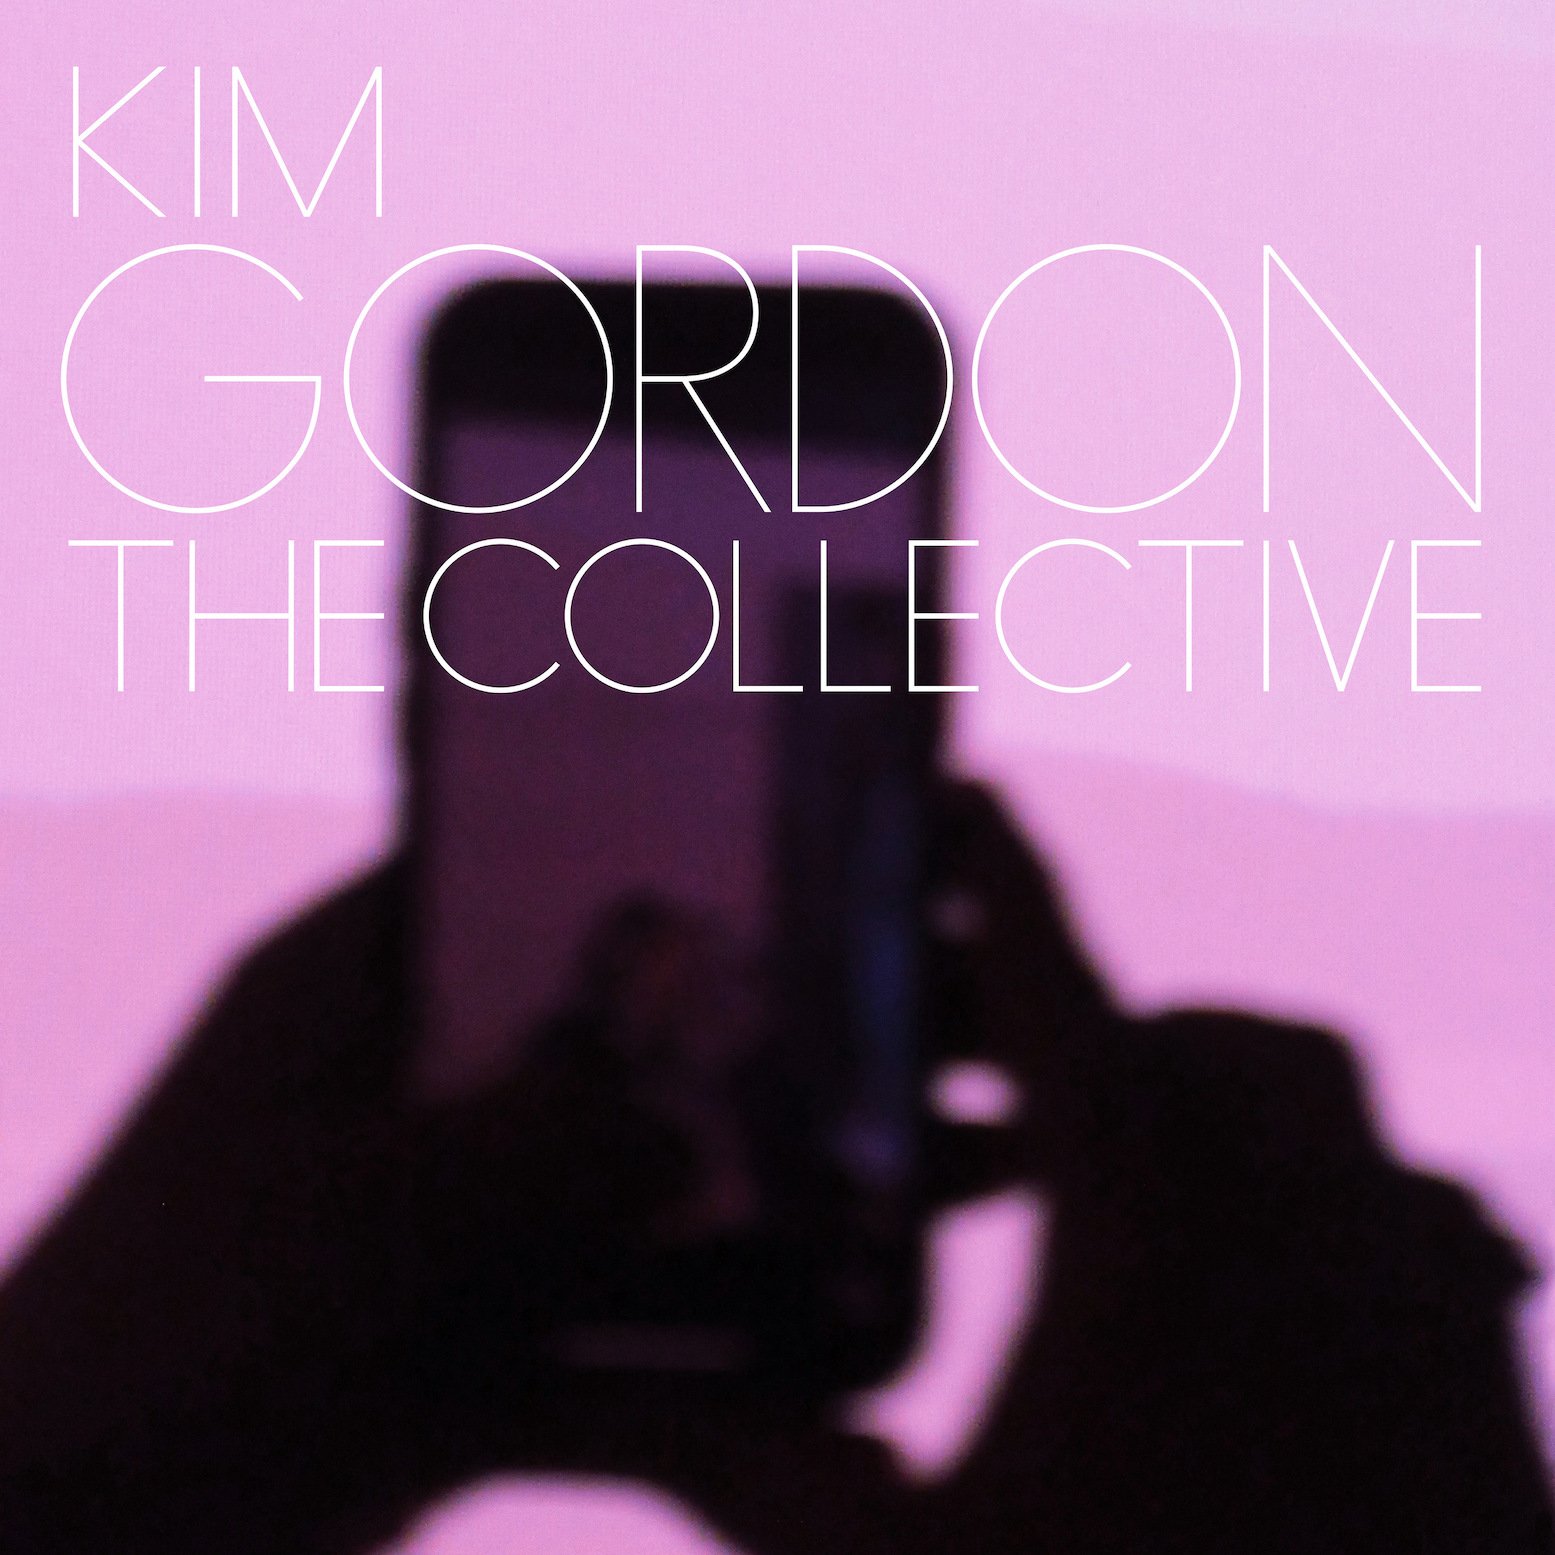   Kim Gordon -  The Collective  [Matador]  